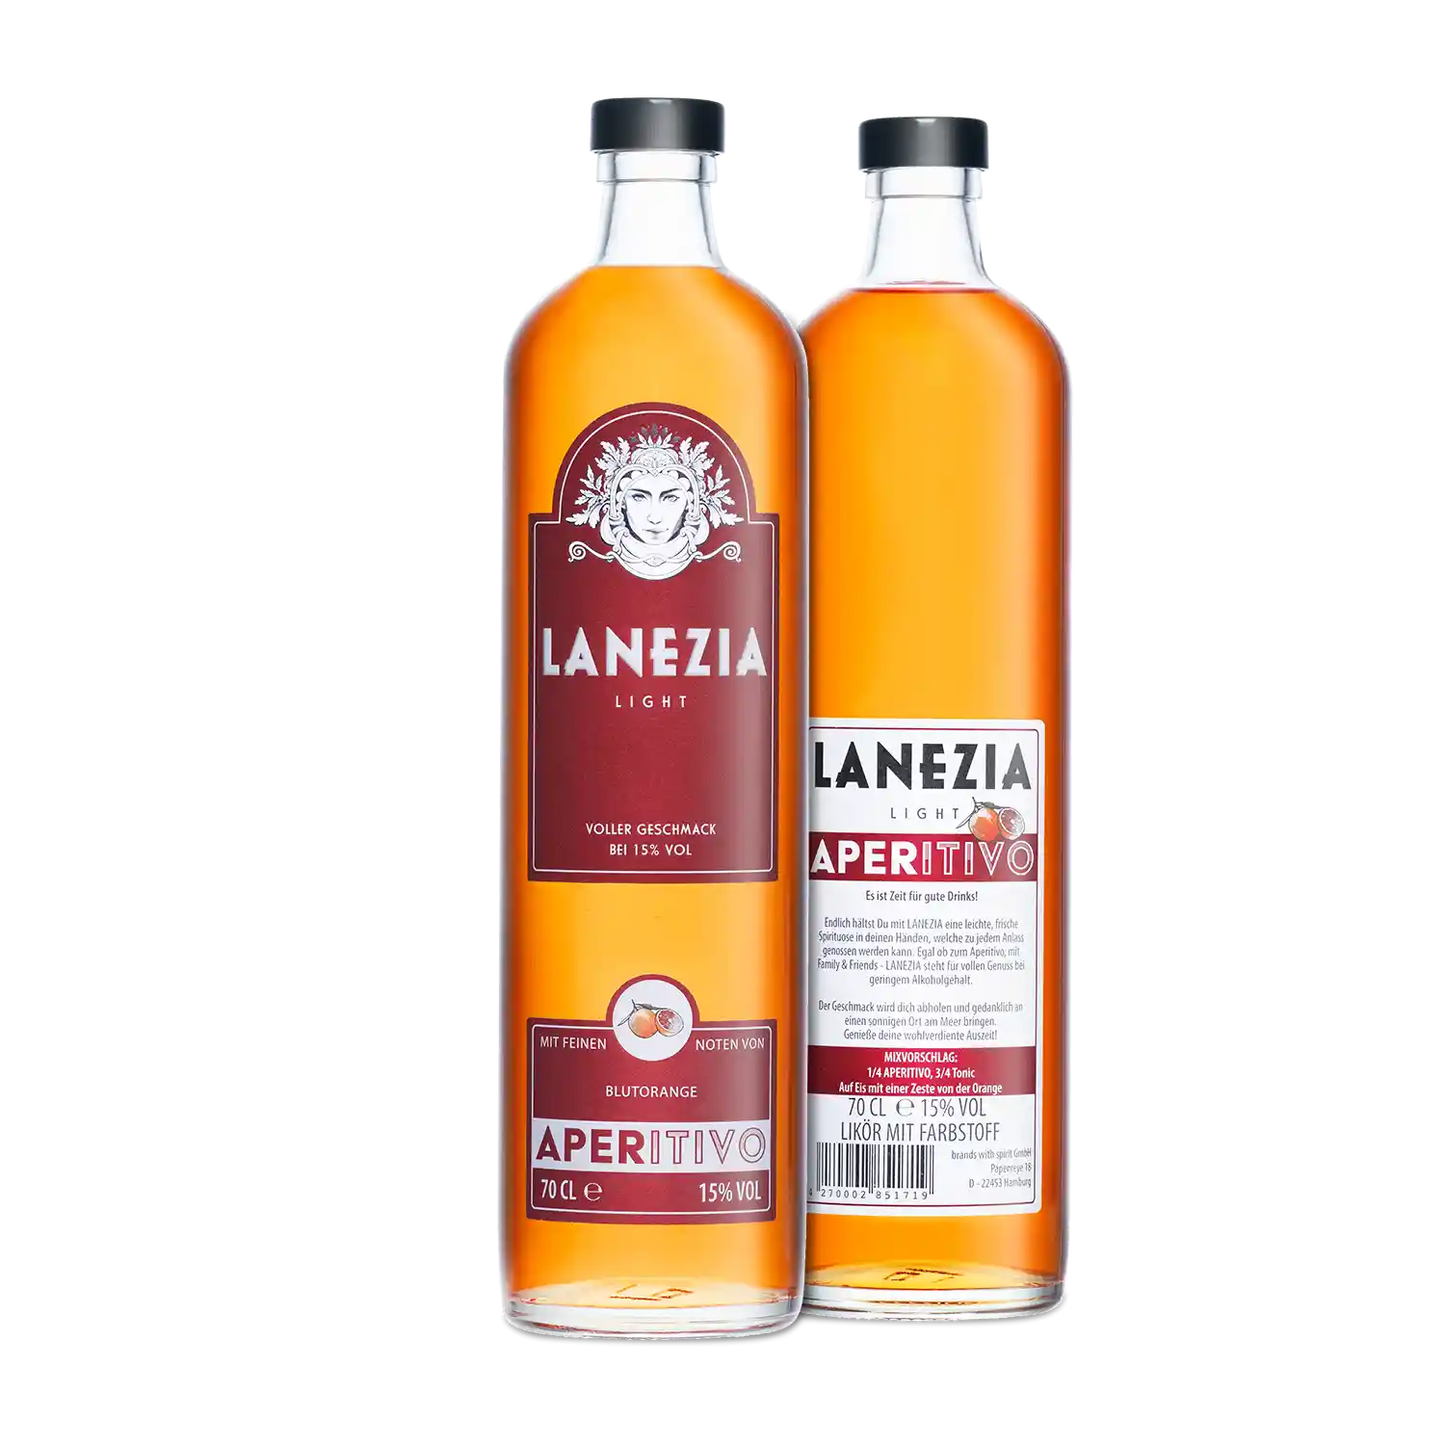 Lanezia Aperitivo - Einzelflasche - Flaschenvorderseite und Rueckseite